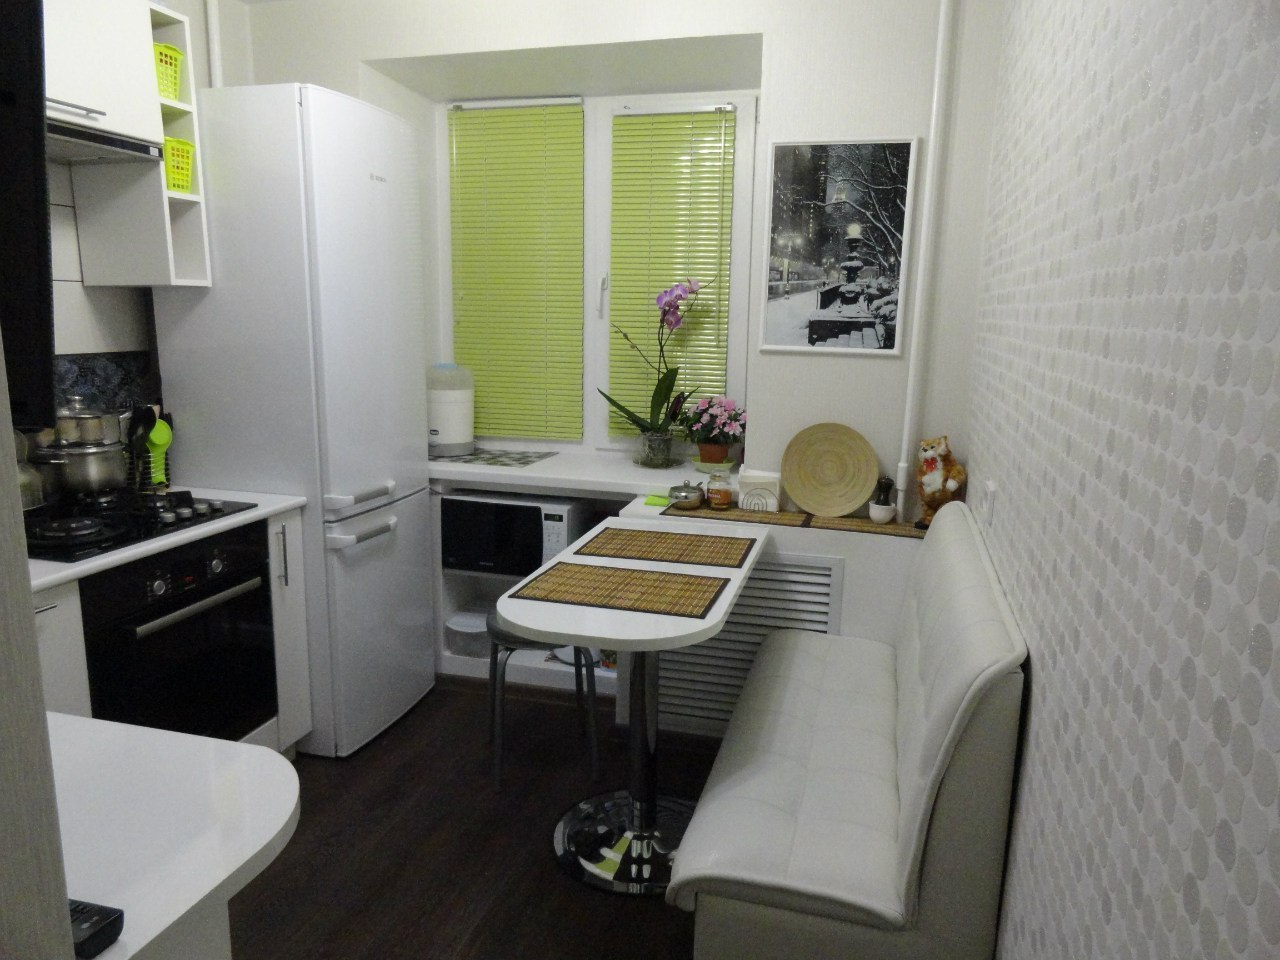 Кухня в хрущевке 101 фото красивые варианты оформления прямых маленьких кухонь проекты малогабаритных комнат с размерами выбираем шторы